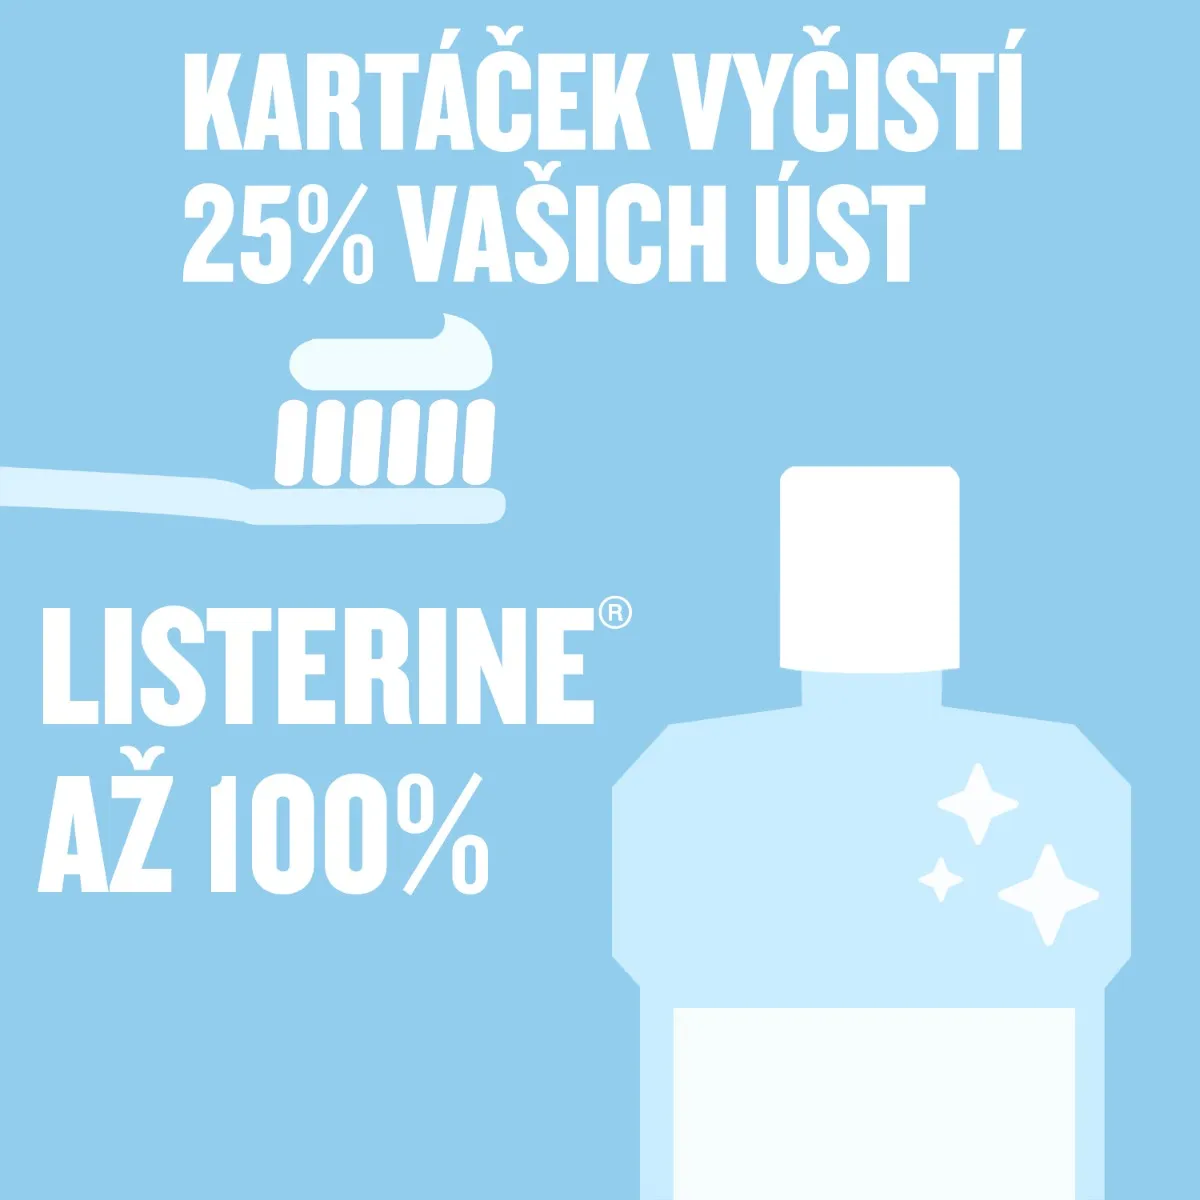 Listerine Advanced White Mild Taste ústní voda 500 ml